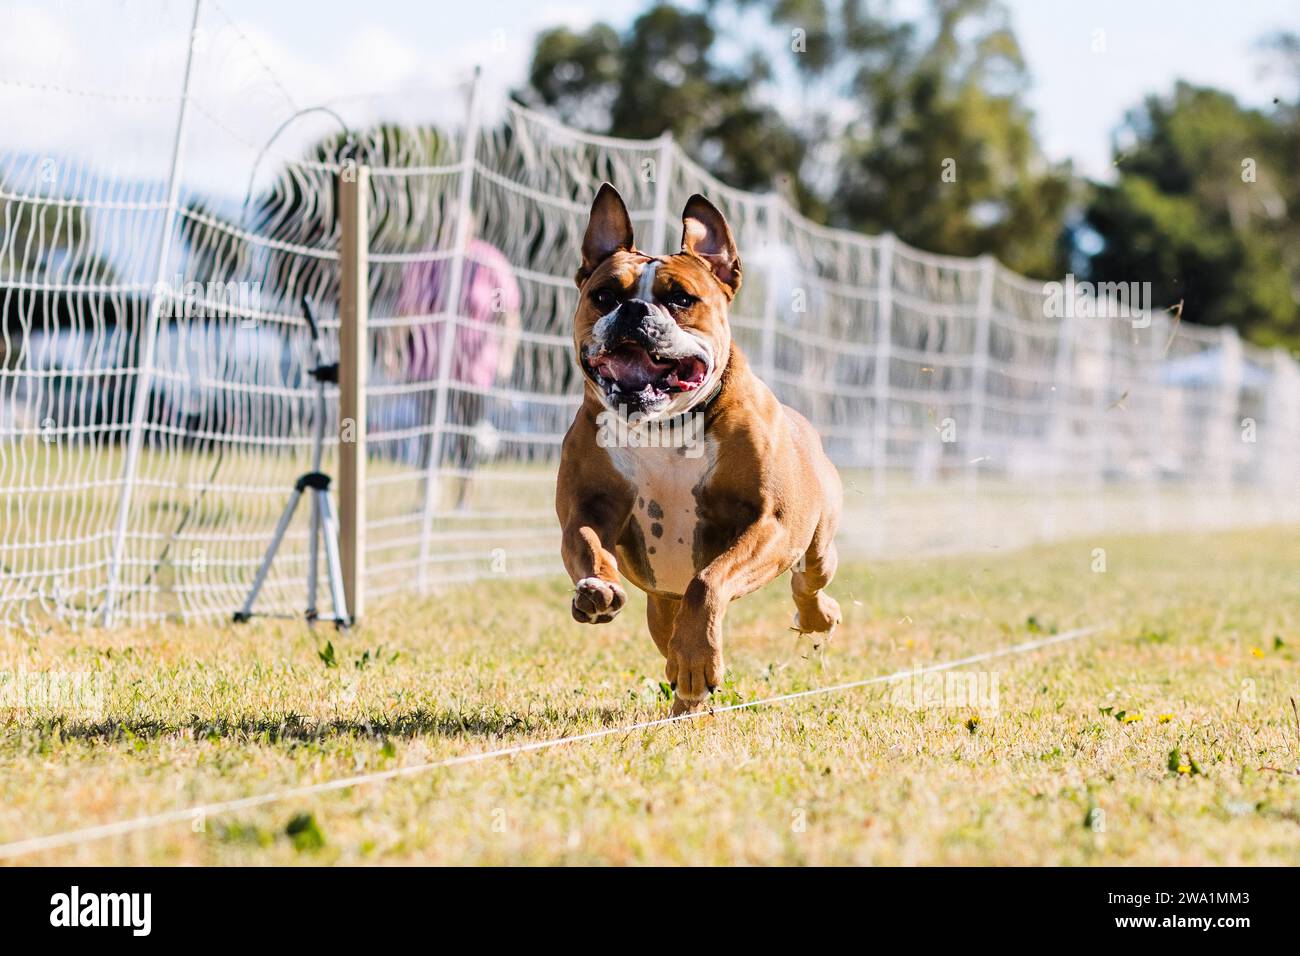 Heureux Bulldog américain course leurre course chien sport au soleil Banque D'Images